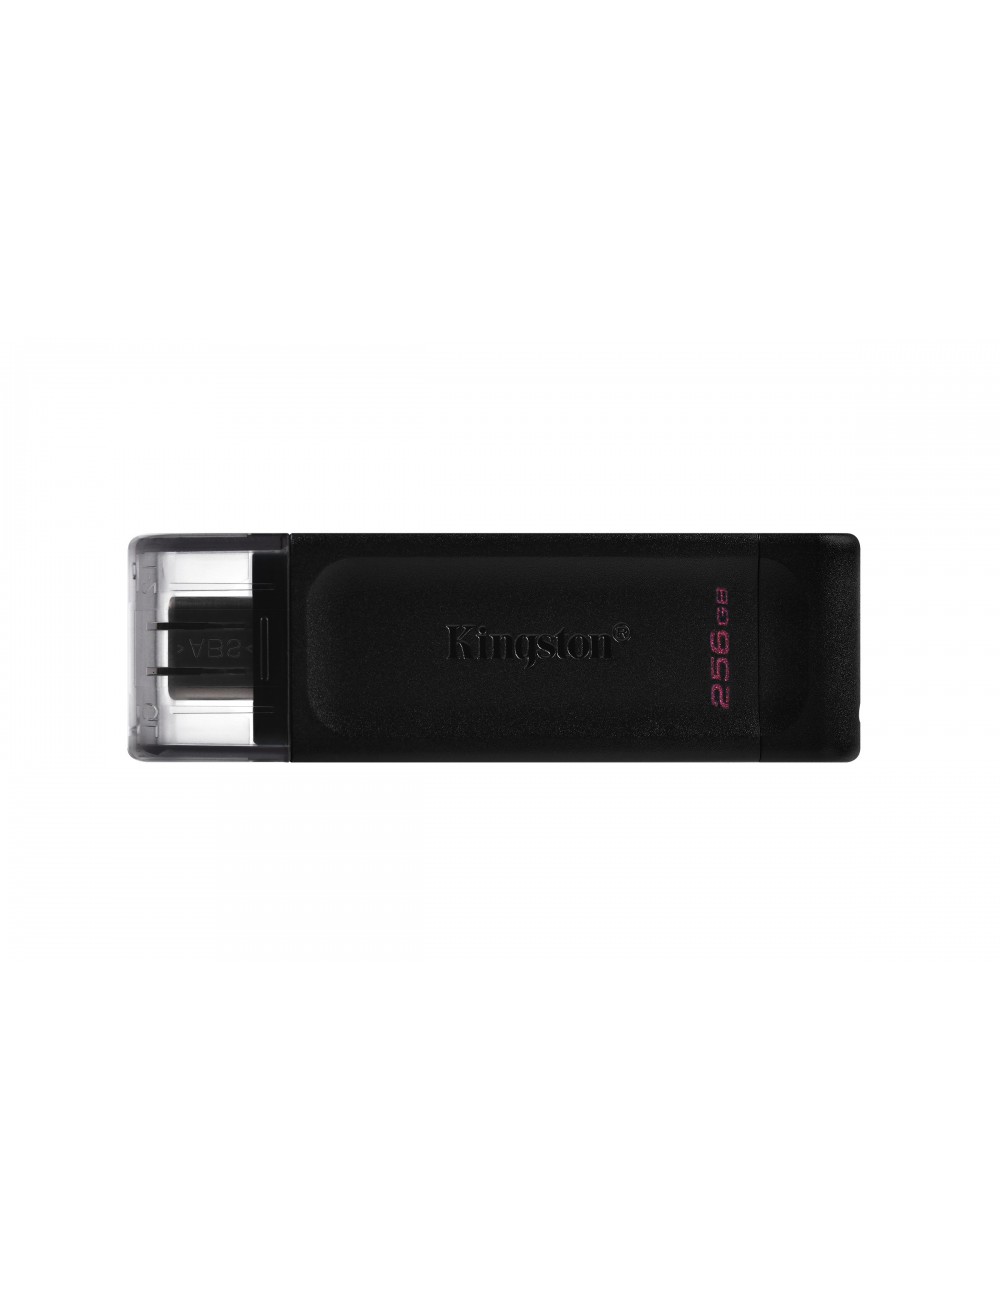 Kingston Technology DataTraveler 70 unidad flash USB 256 GB USB Tipo C 3.2 Gen 1 (3.1 Gen 1) Negro